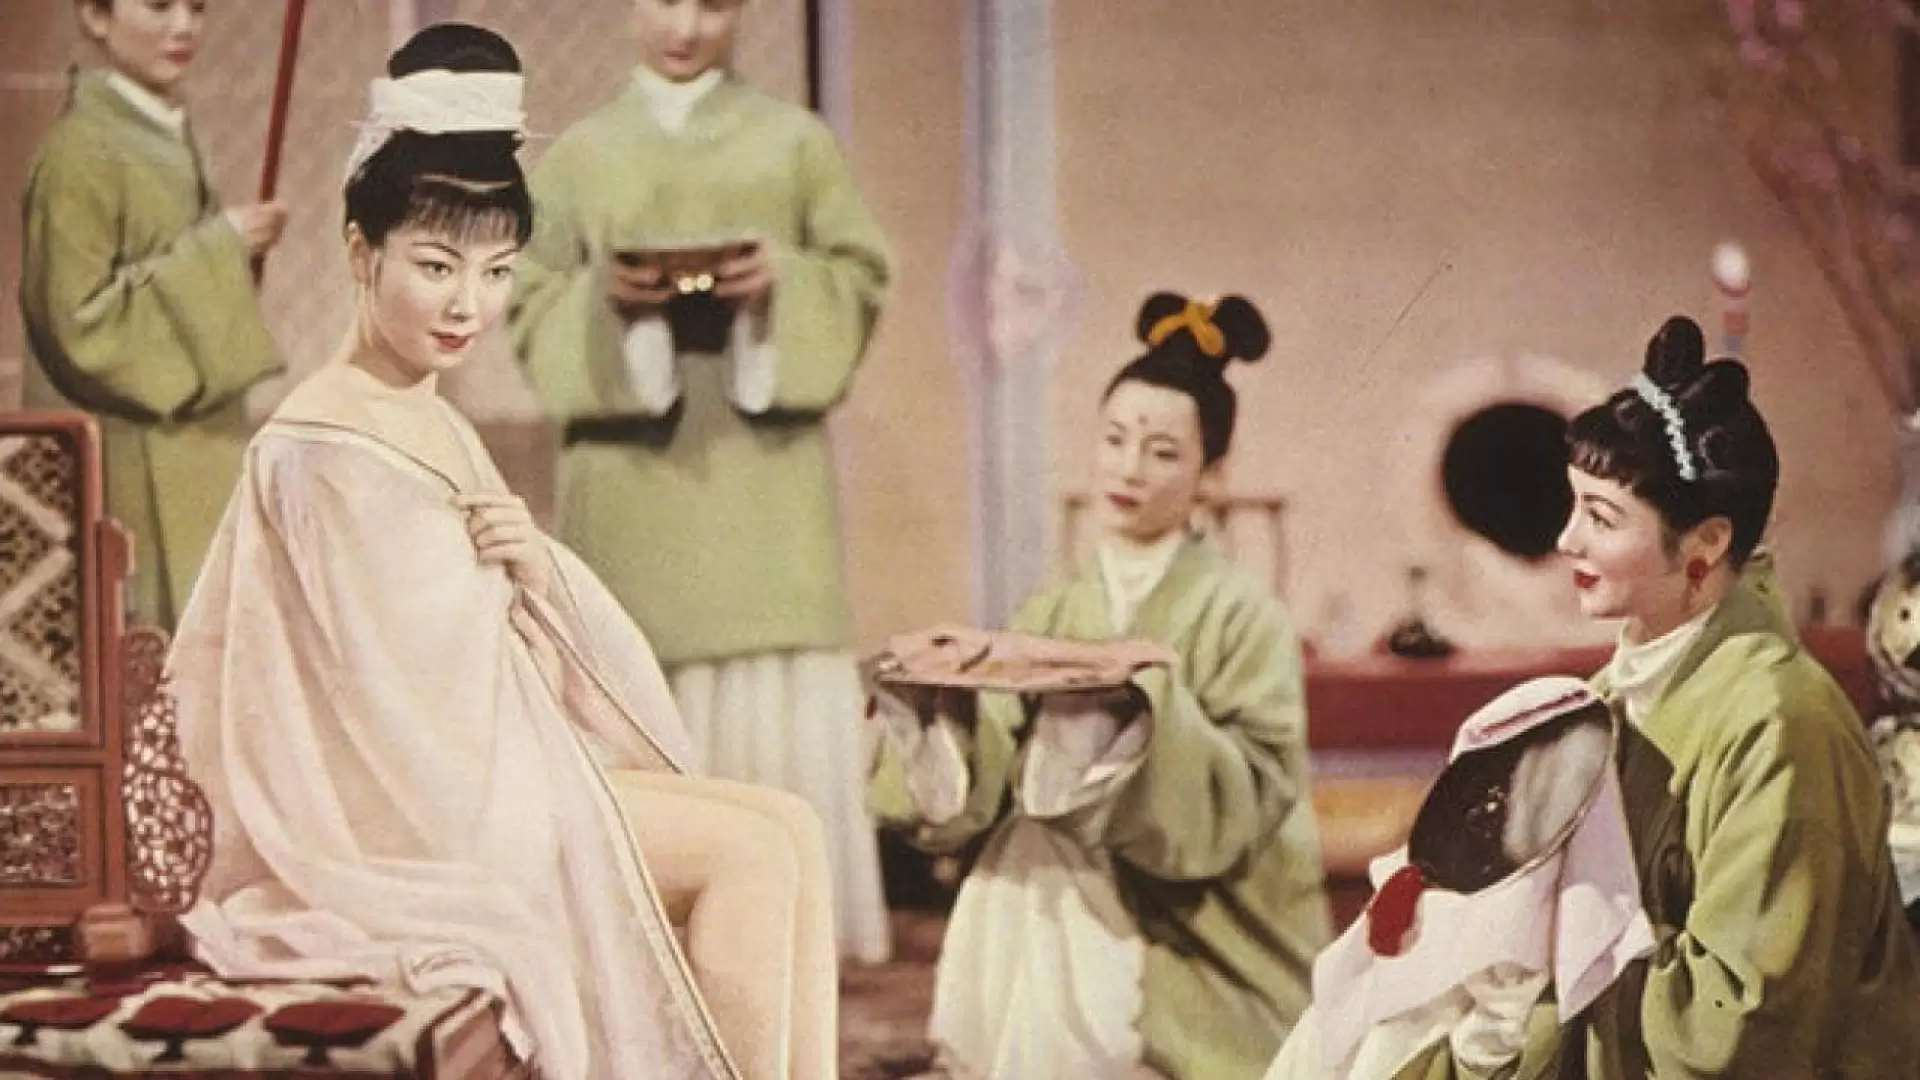 دانلود فیلم Princess Yang Kwei-fei 1955 با زیرنویس فارسی